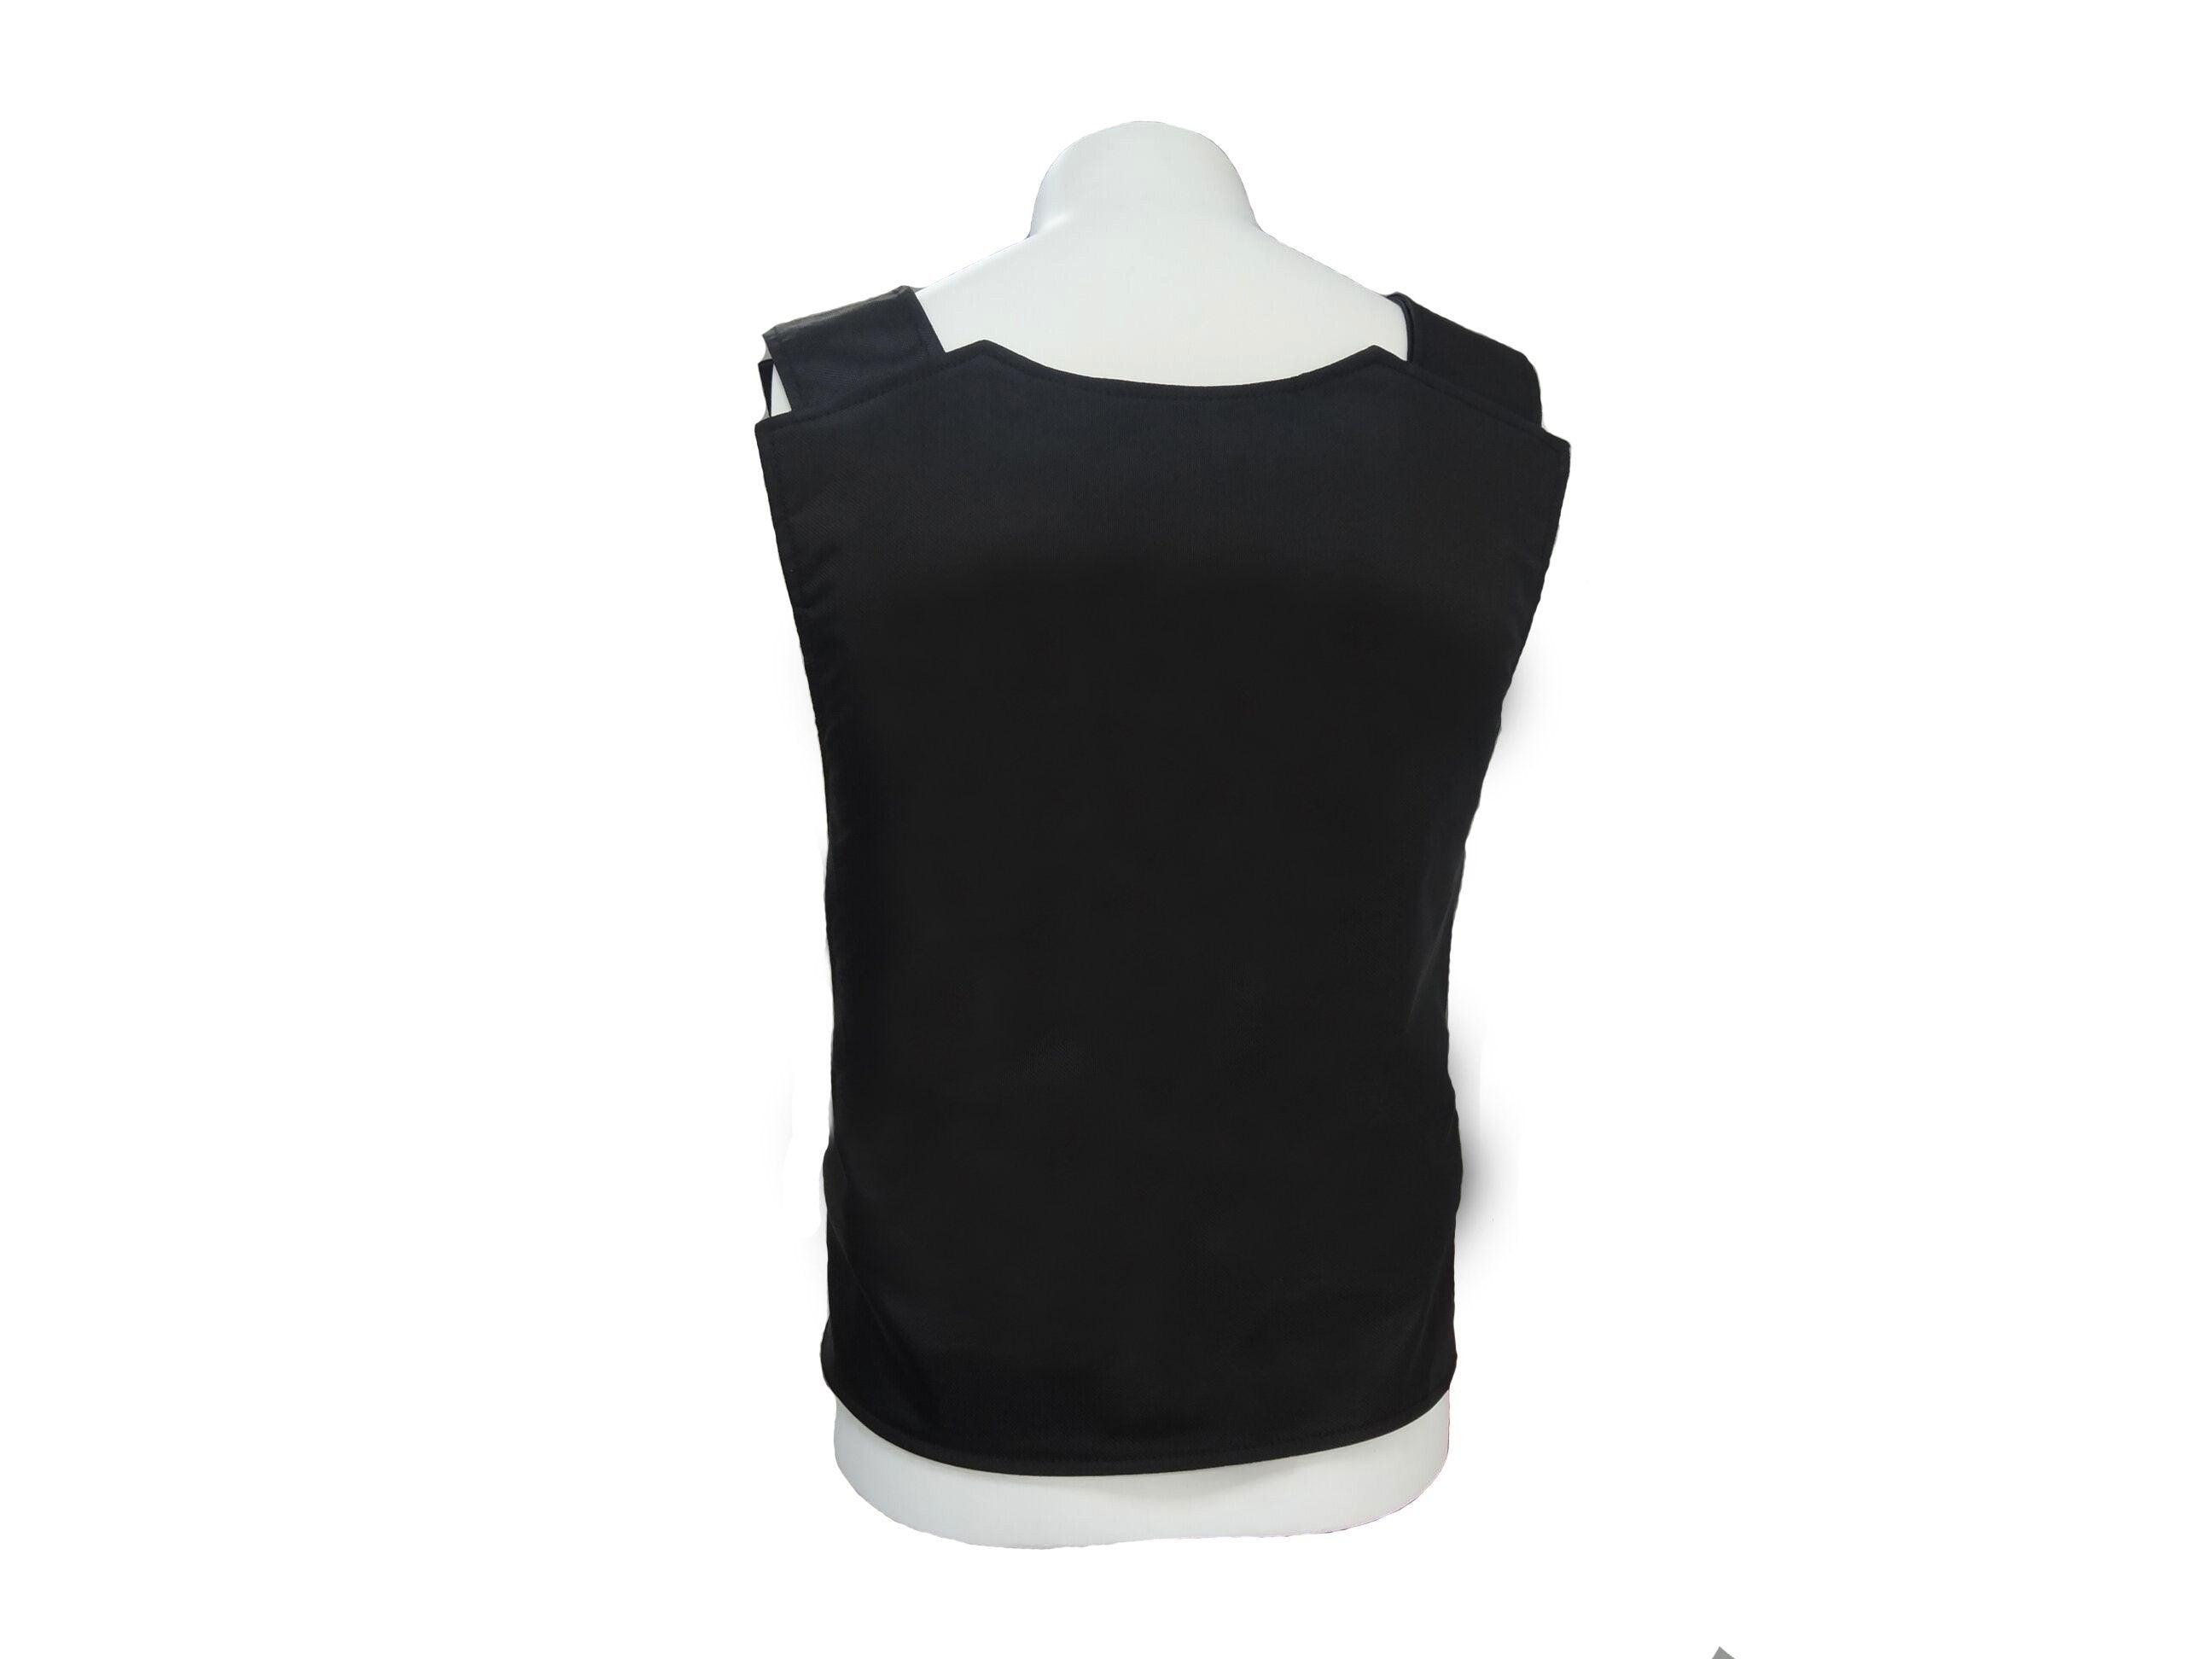 Customized Bulletproof Vests for Sale | Buy Carrier Vests Online ...